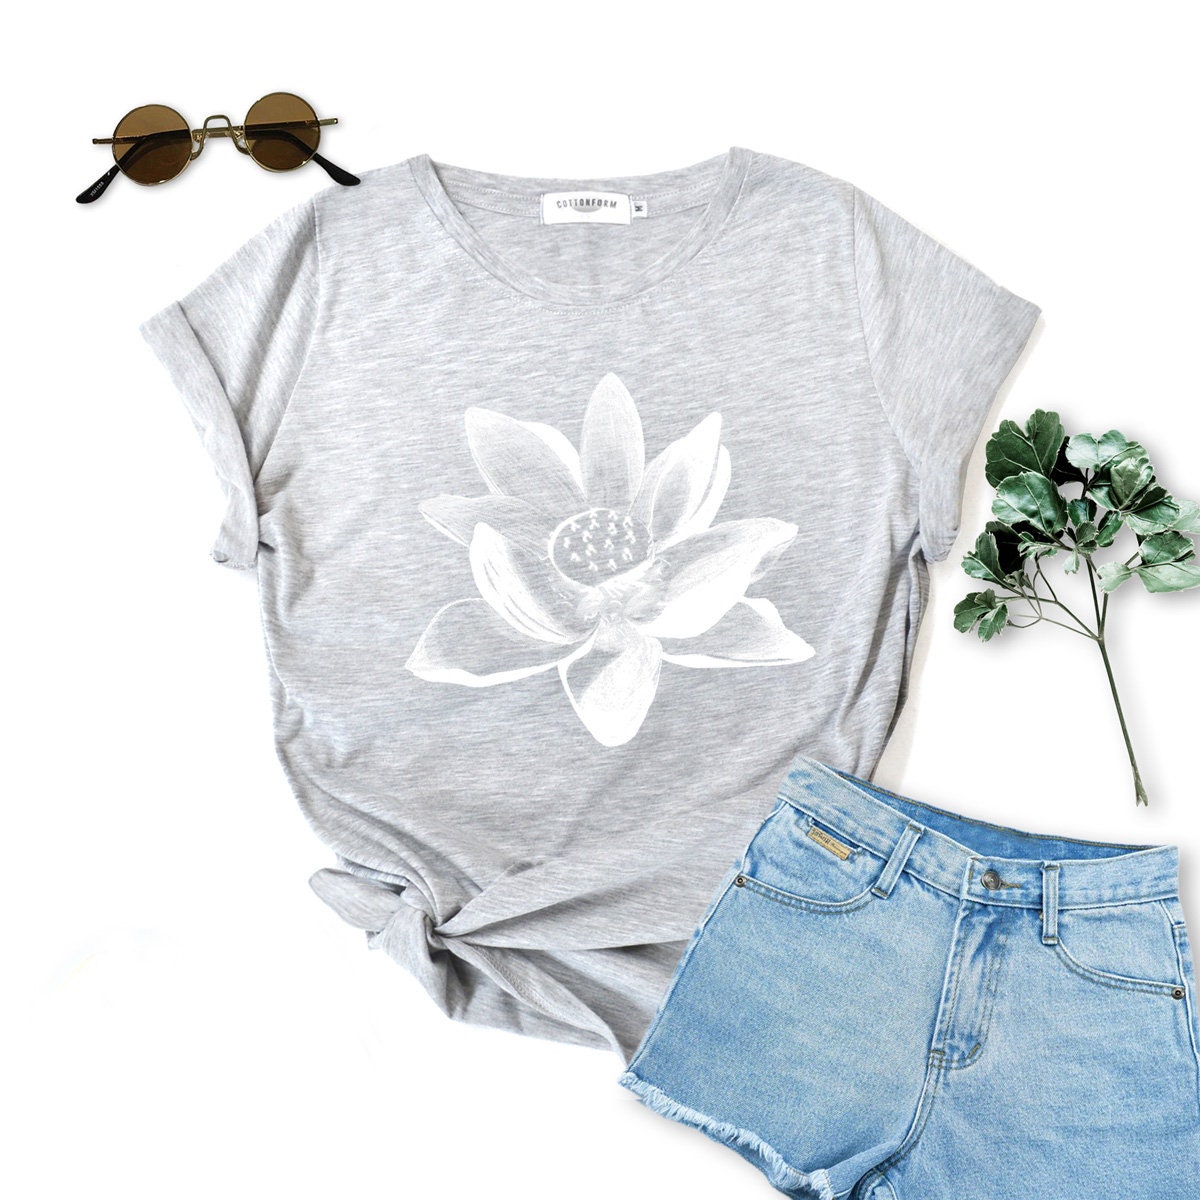 Lotus Shirt Flower Shirt Gift Woman Tshirt Birthday Gift Shirt - Etsy